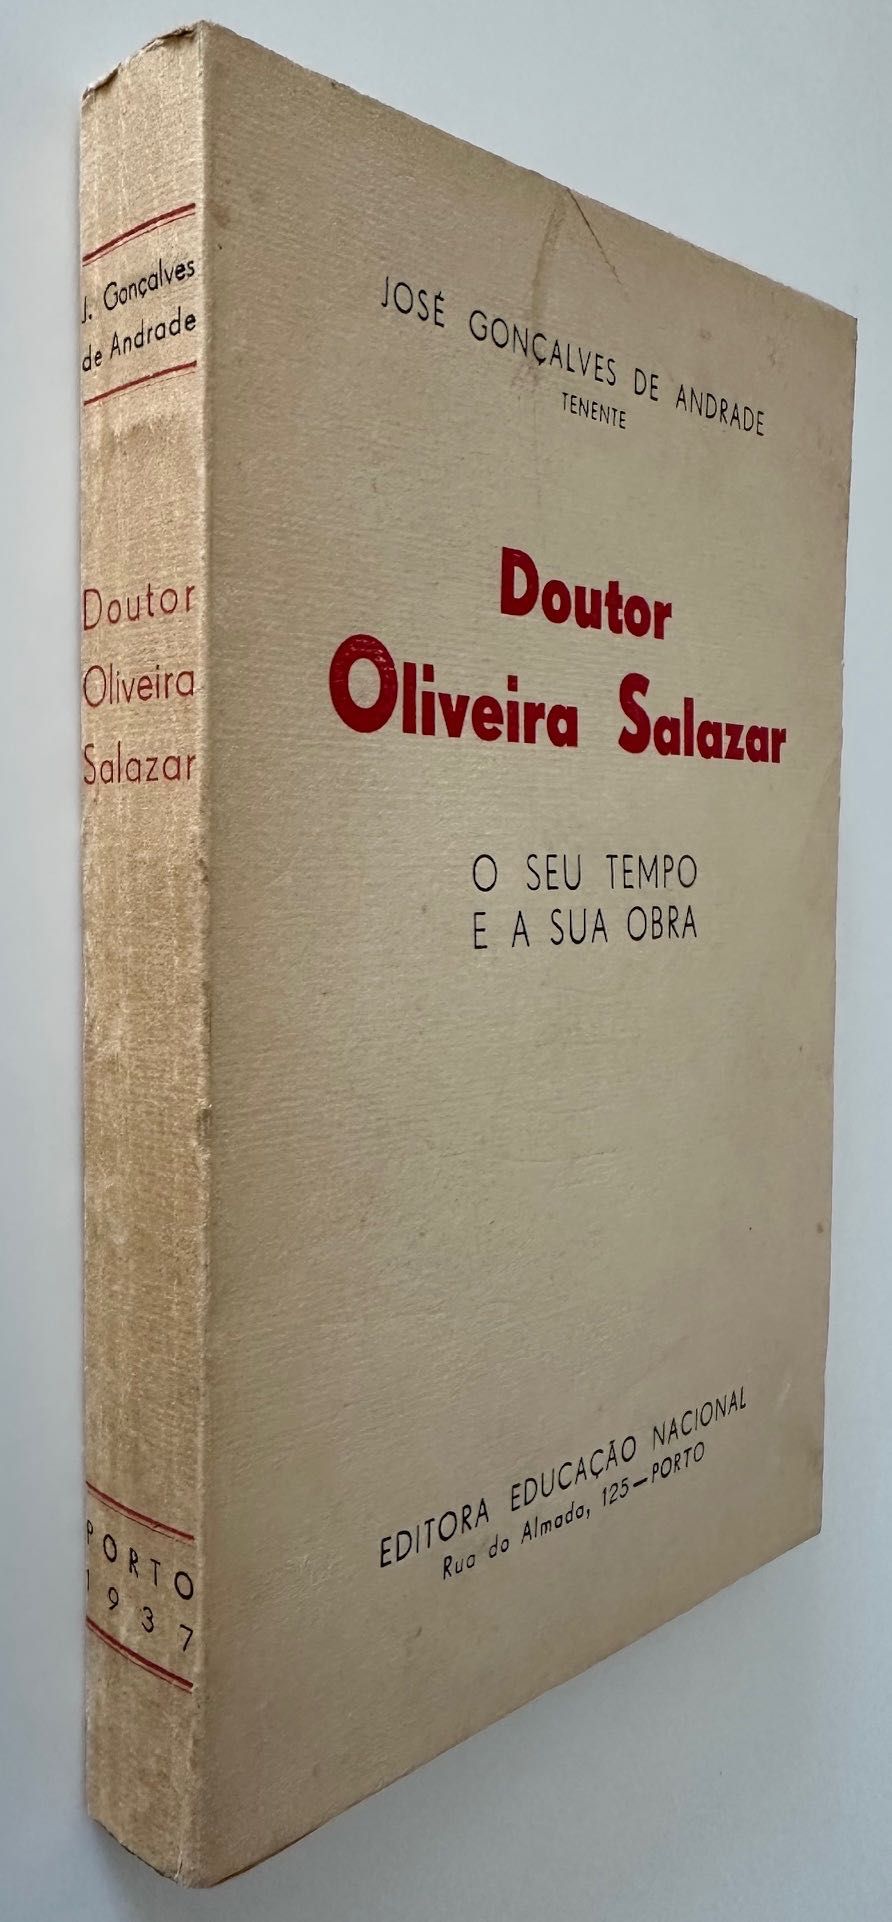 Doutor Oliveira Salazar - José Gonçalves de Andrade - 1937